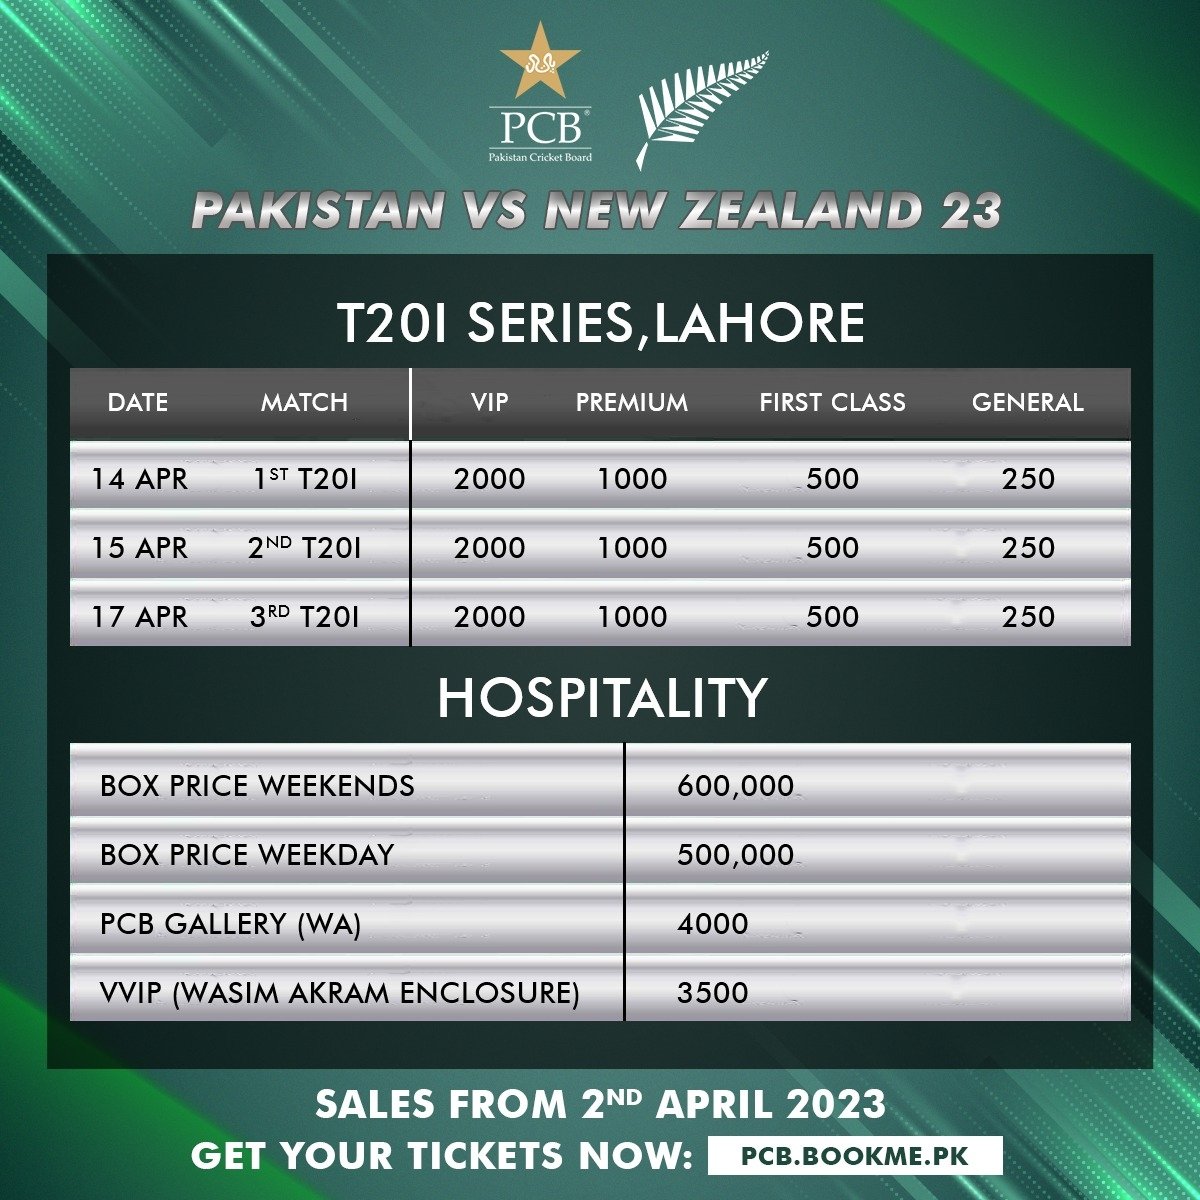 Pakistan vs New Zealand T20 Series 2023-Ticket Price, Online Booking